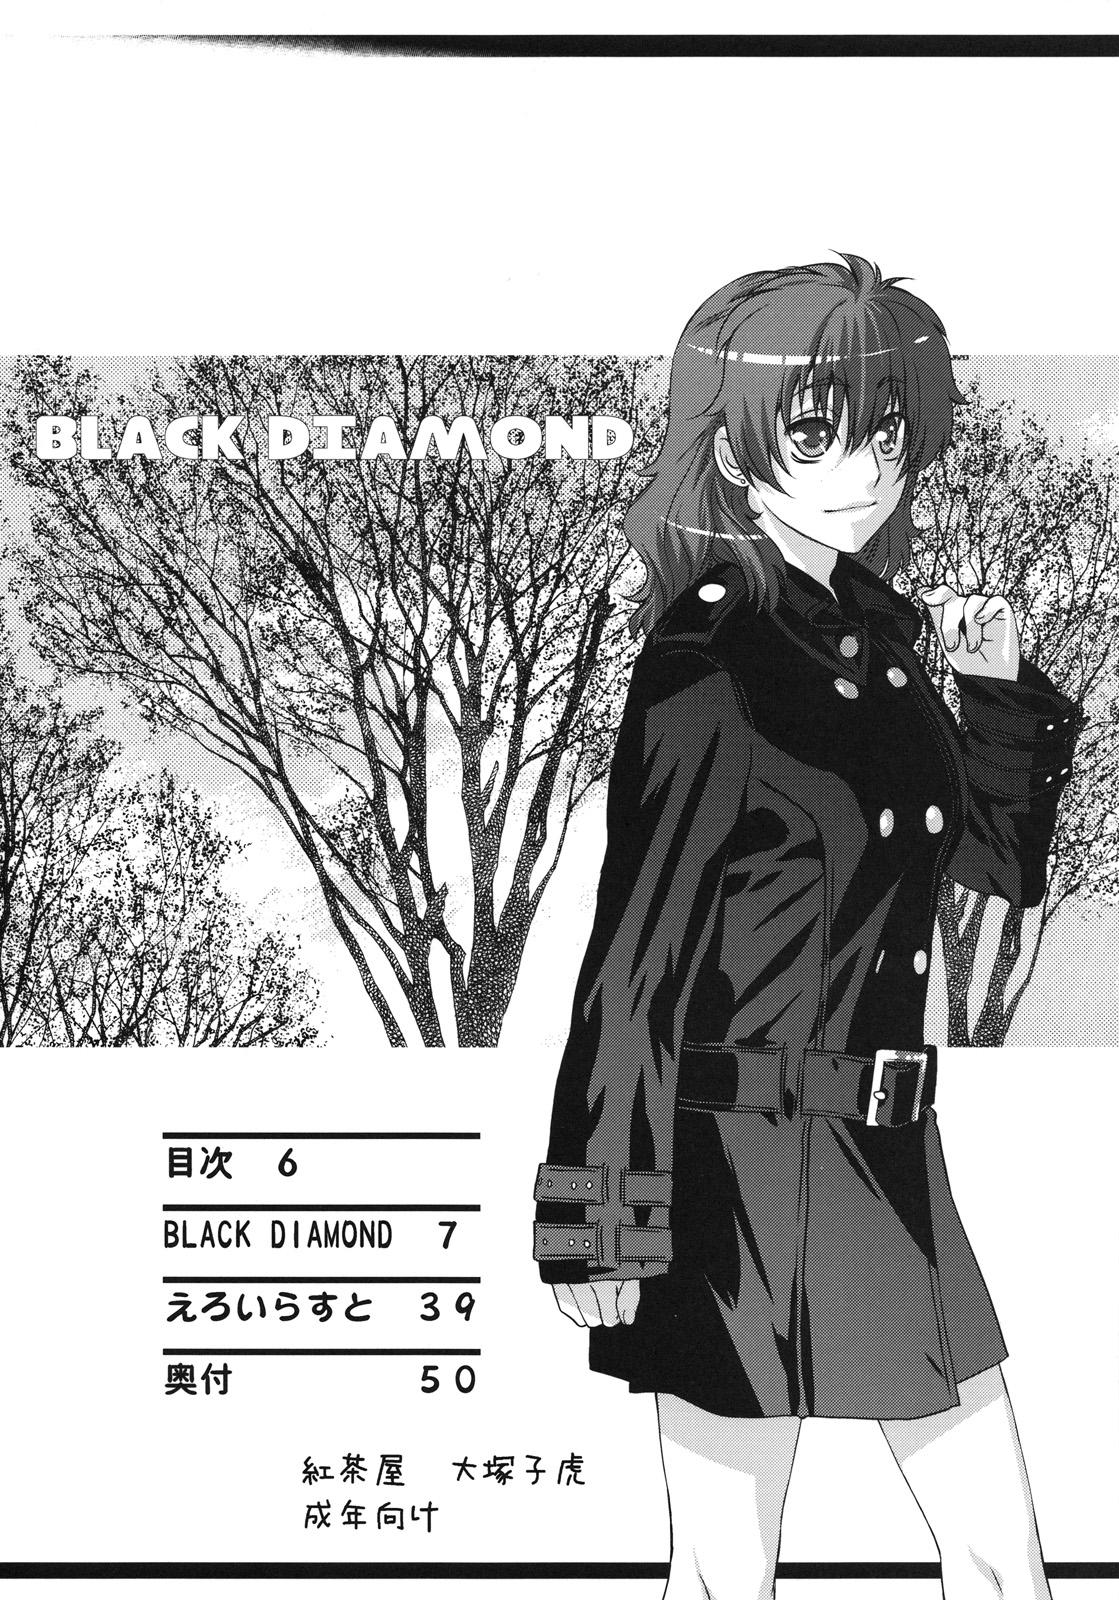 BLACK DIAMOND 4